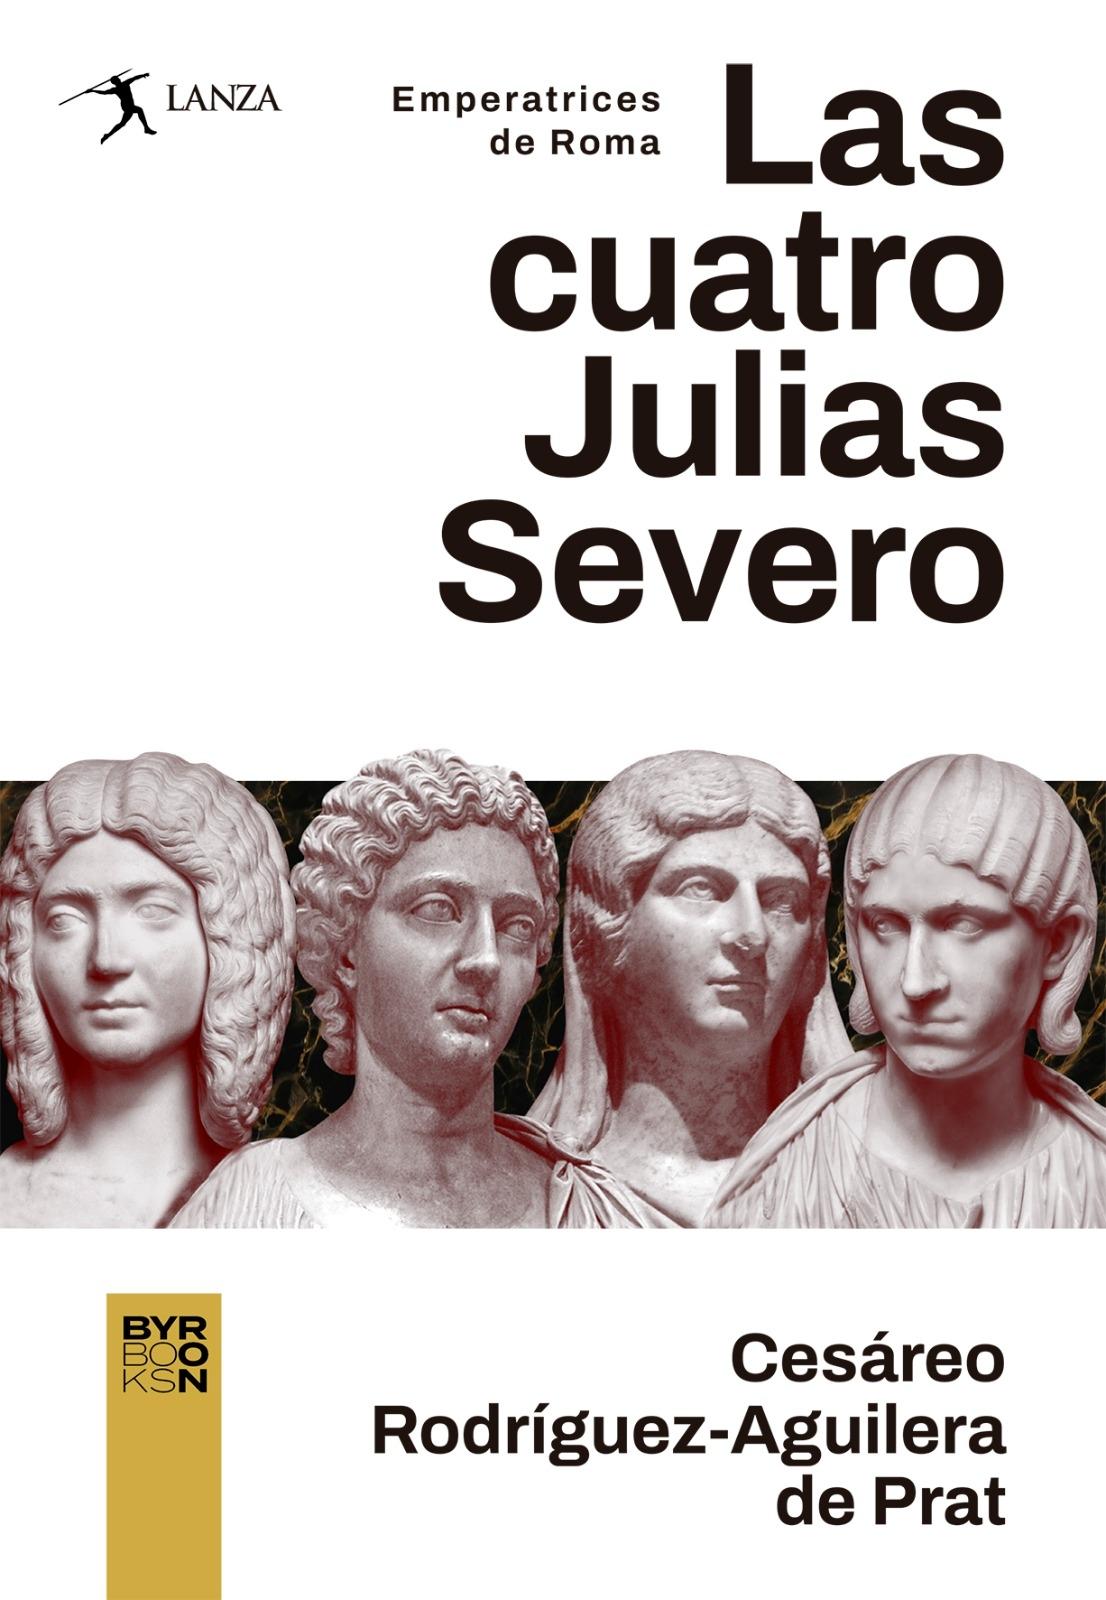 Las Cuatro Julias Severo "Emperatrices de Roma"